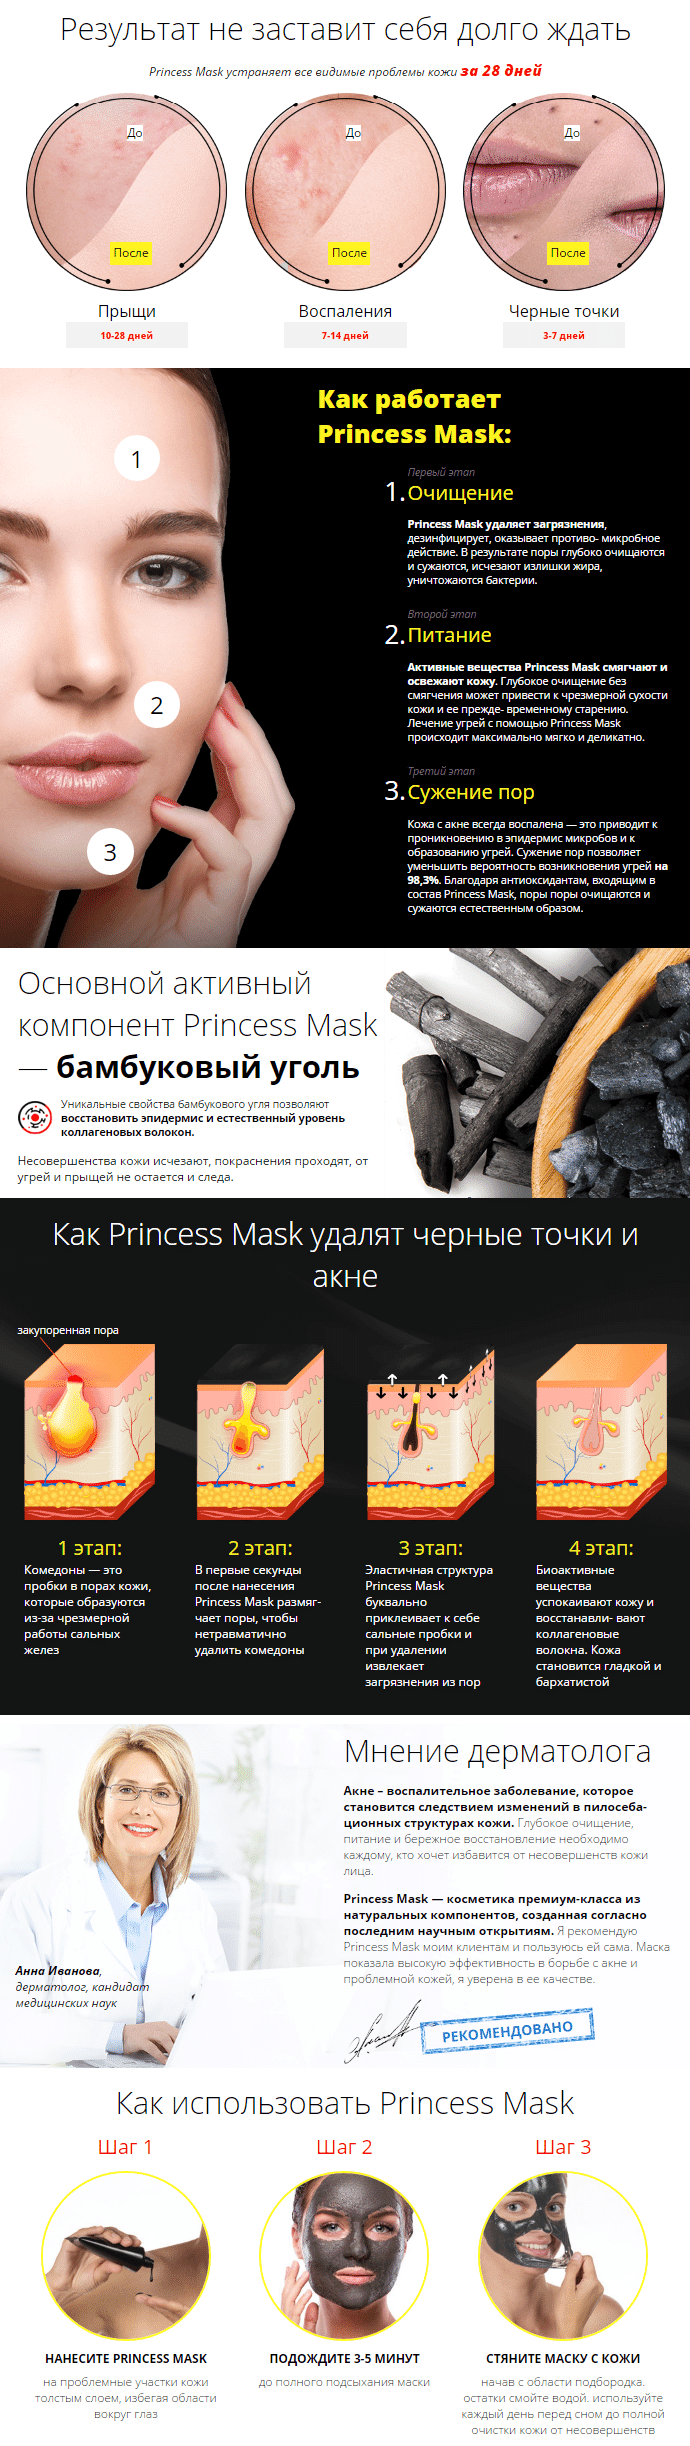 Princess Mask (Принцесс Маск) маска от прыщей, угрей, черных точек купить